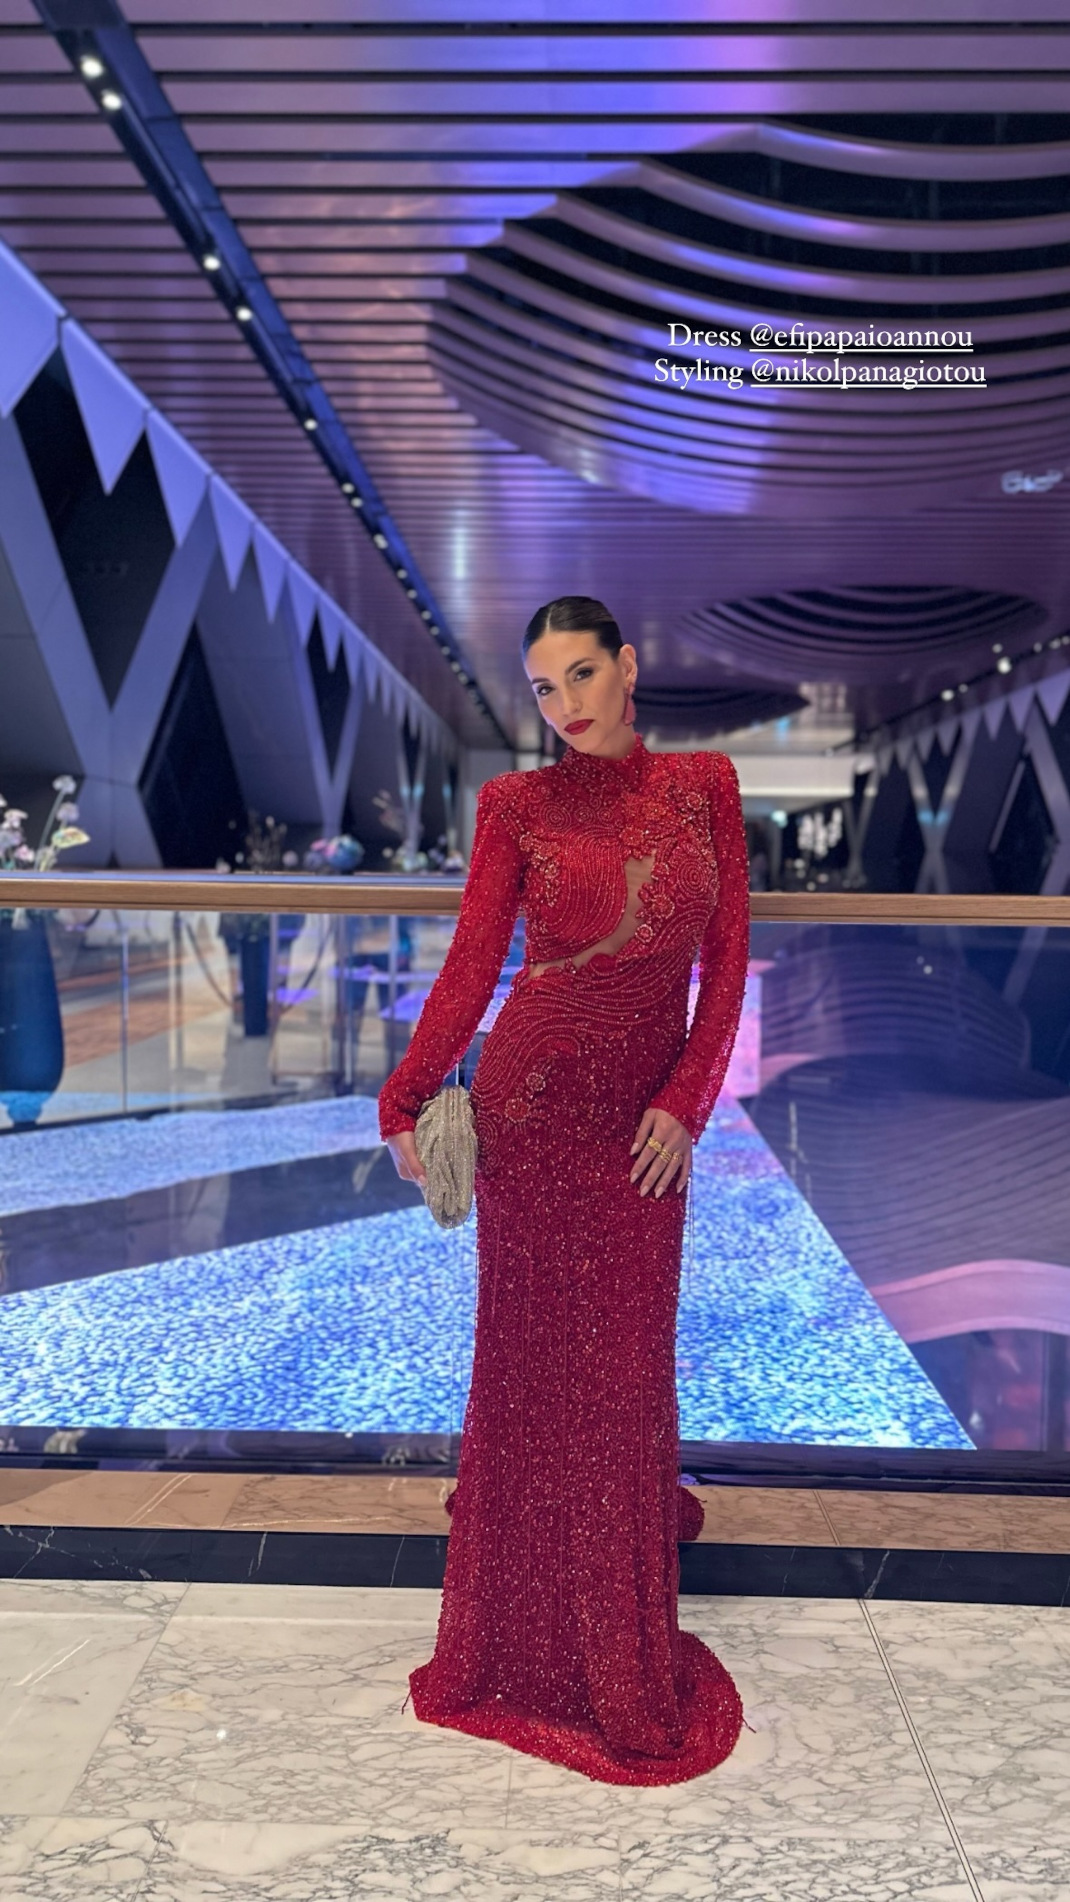 Εκθαμβωτική με κόκκινο φόρεμα η Οικονομάκου σε εγκαίνια ξενοδοχείου με guest την Λόπεζ - Στην παρέα  της Βίκυ Καγιά  & Αντίνοος Αλμπάνης (εικόνες)